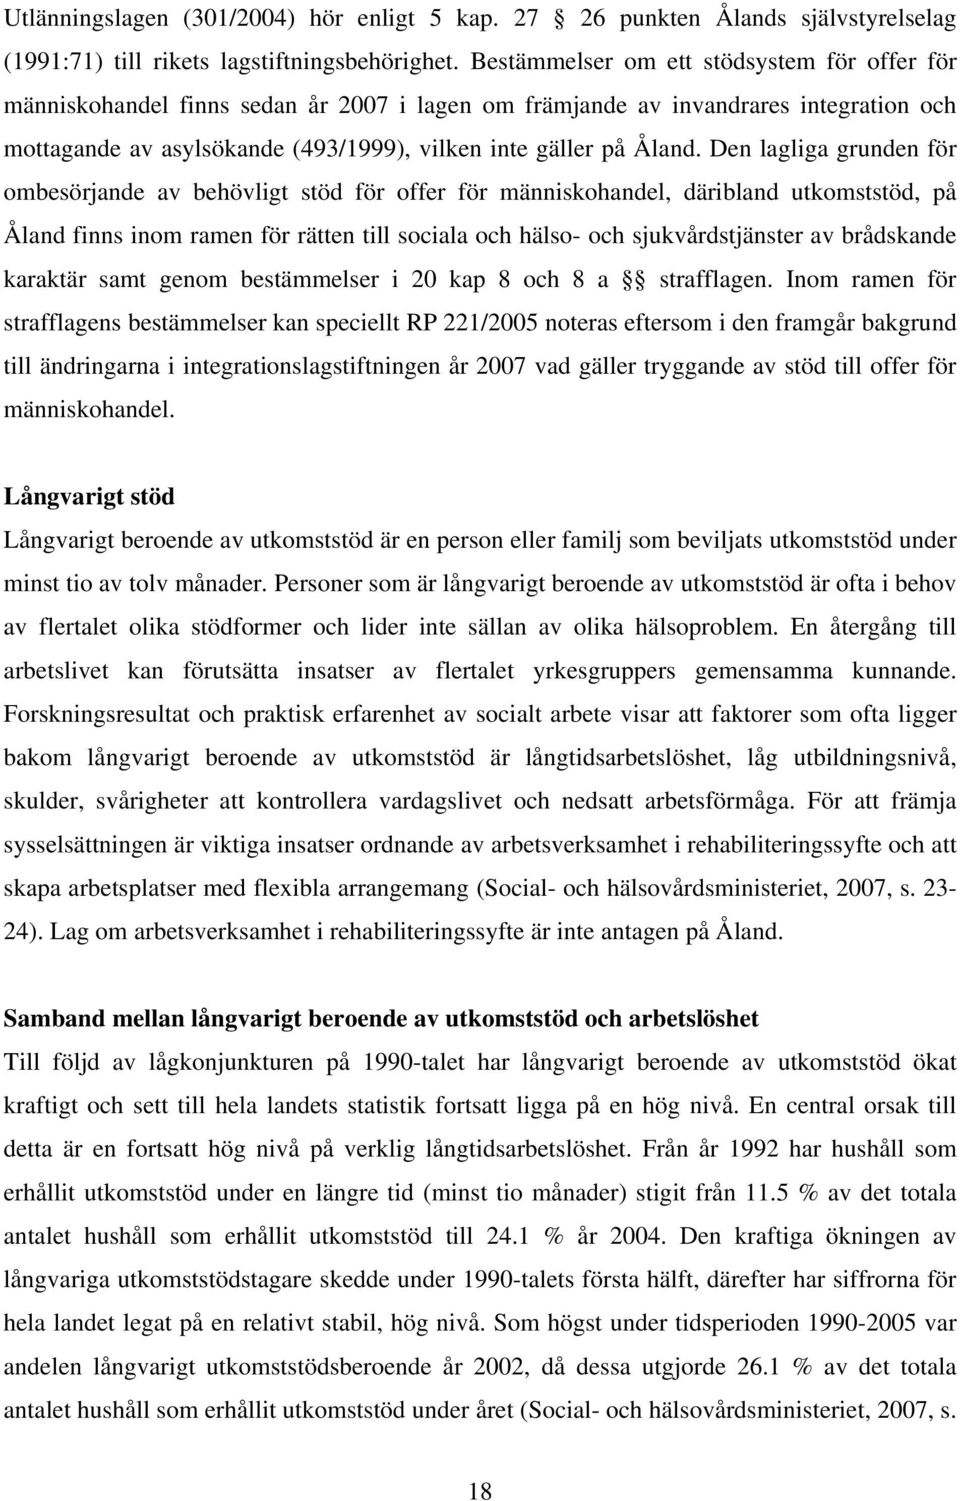 Den lagliga grunden för ombesörjande av behövligt stöd för offer för människohandel, däribland utkomststöd, på Åland finns inom ramen för rätten till sociala och hälso- och sjukvårdstjänster av